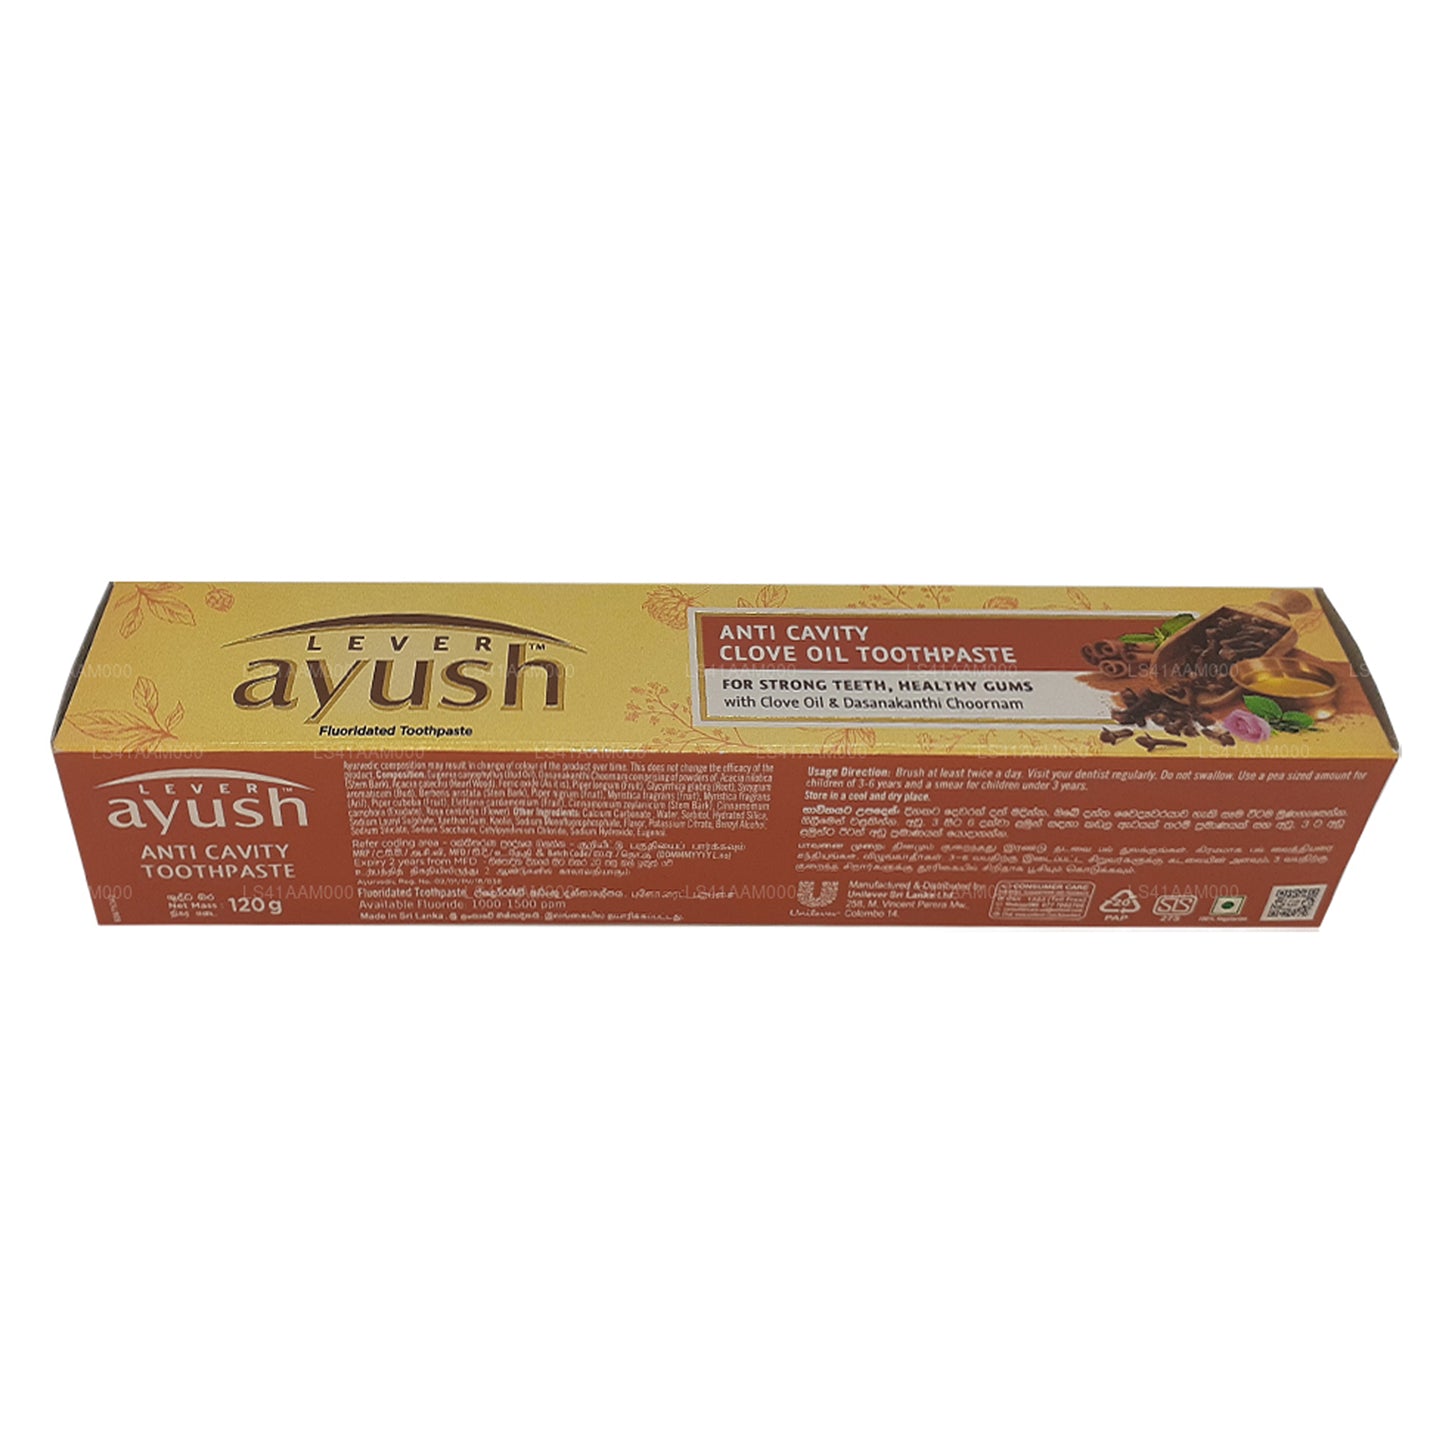 Зубная паста Ayush с гвоздичным маслом против кариеса